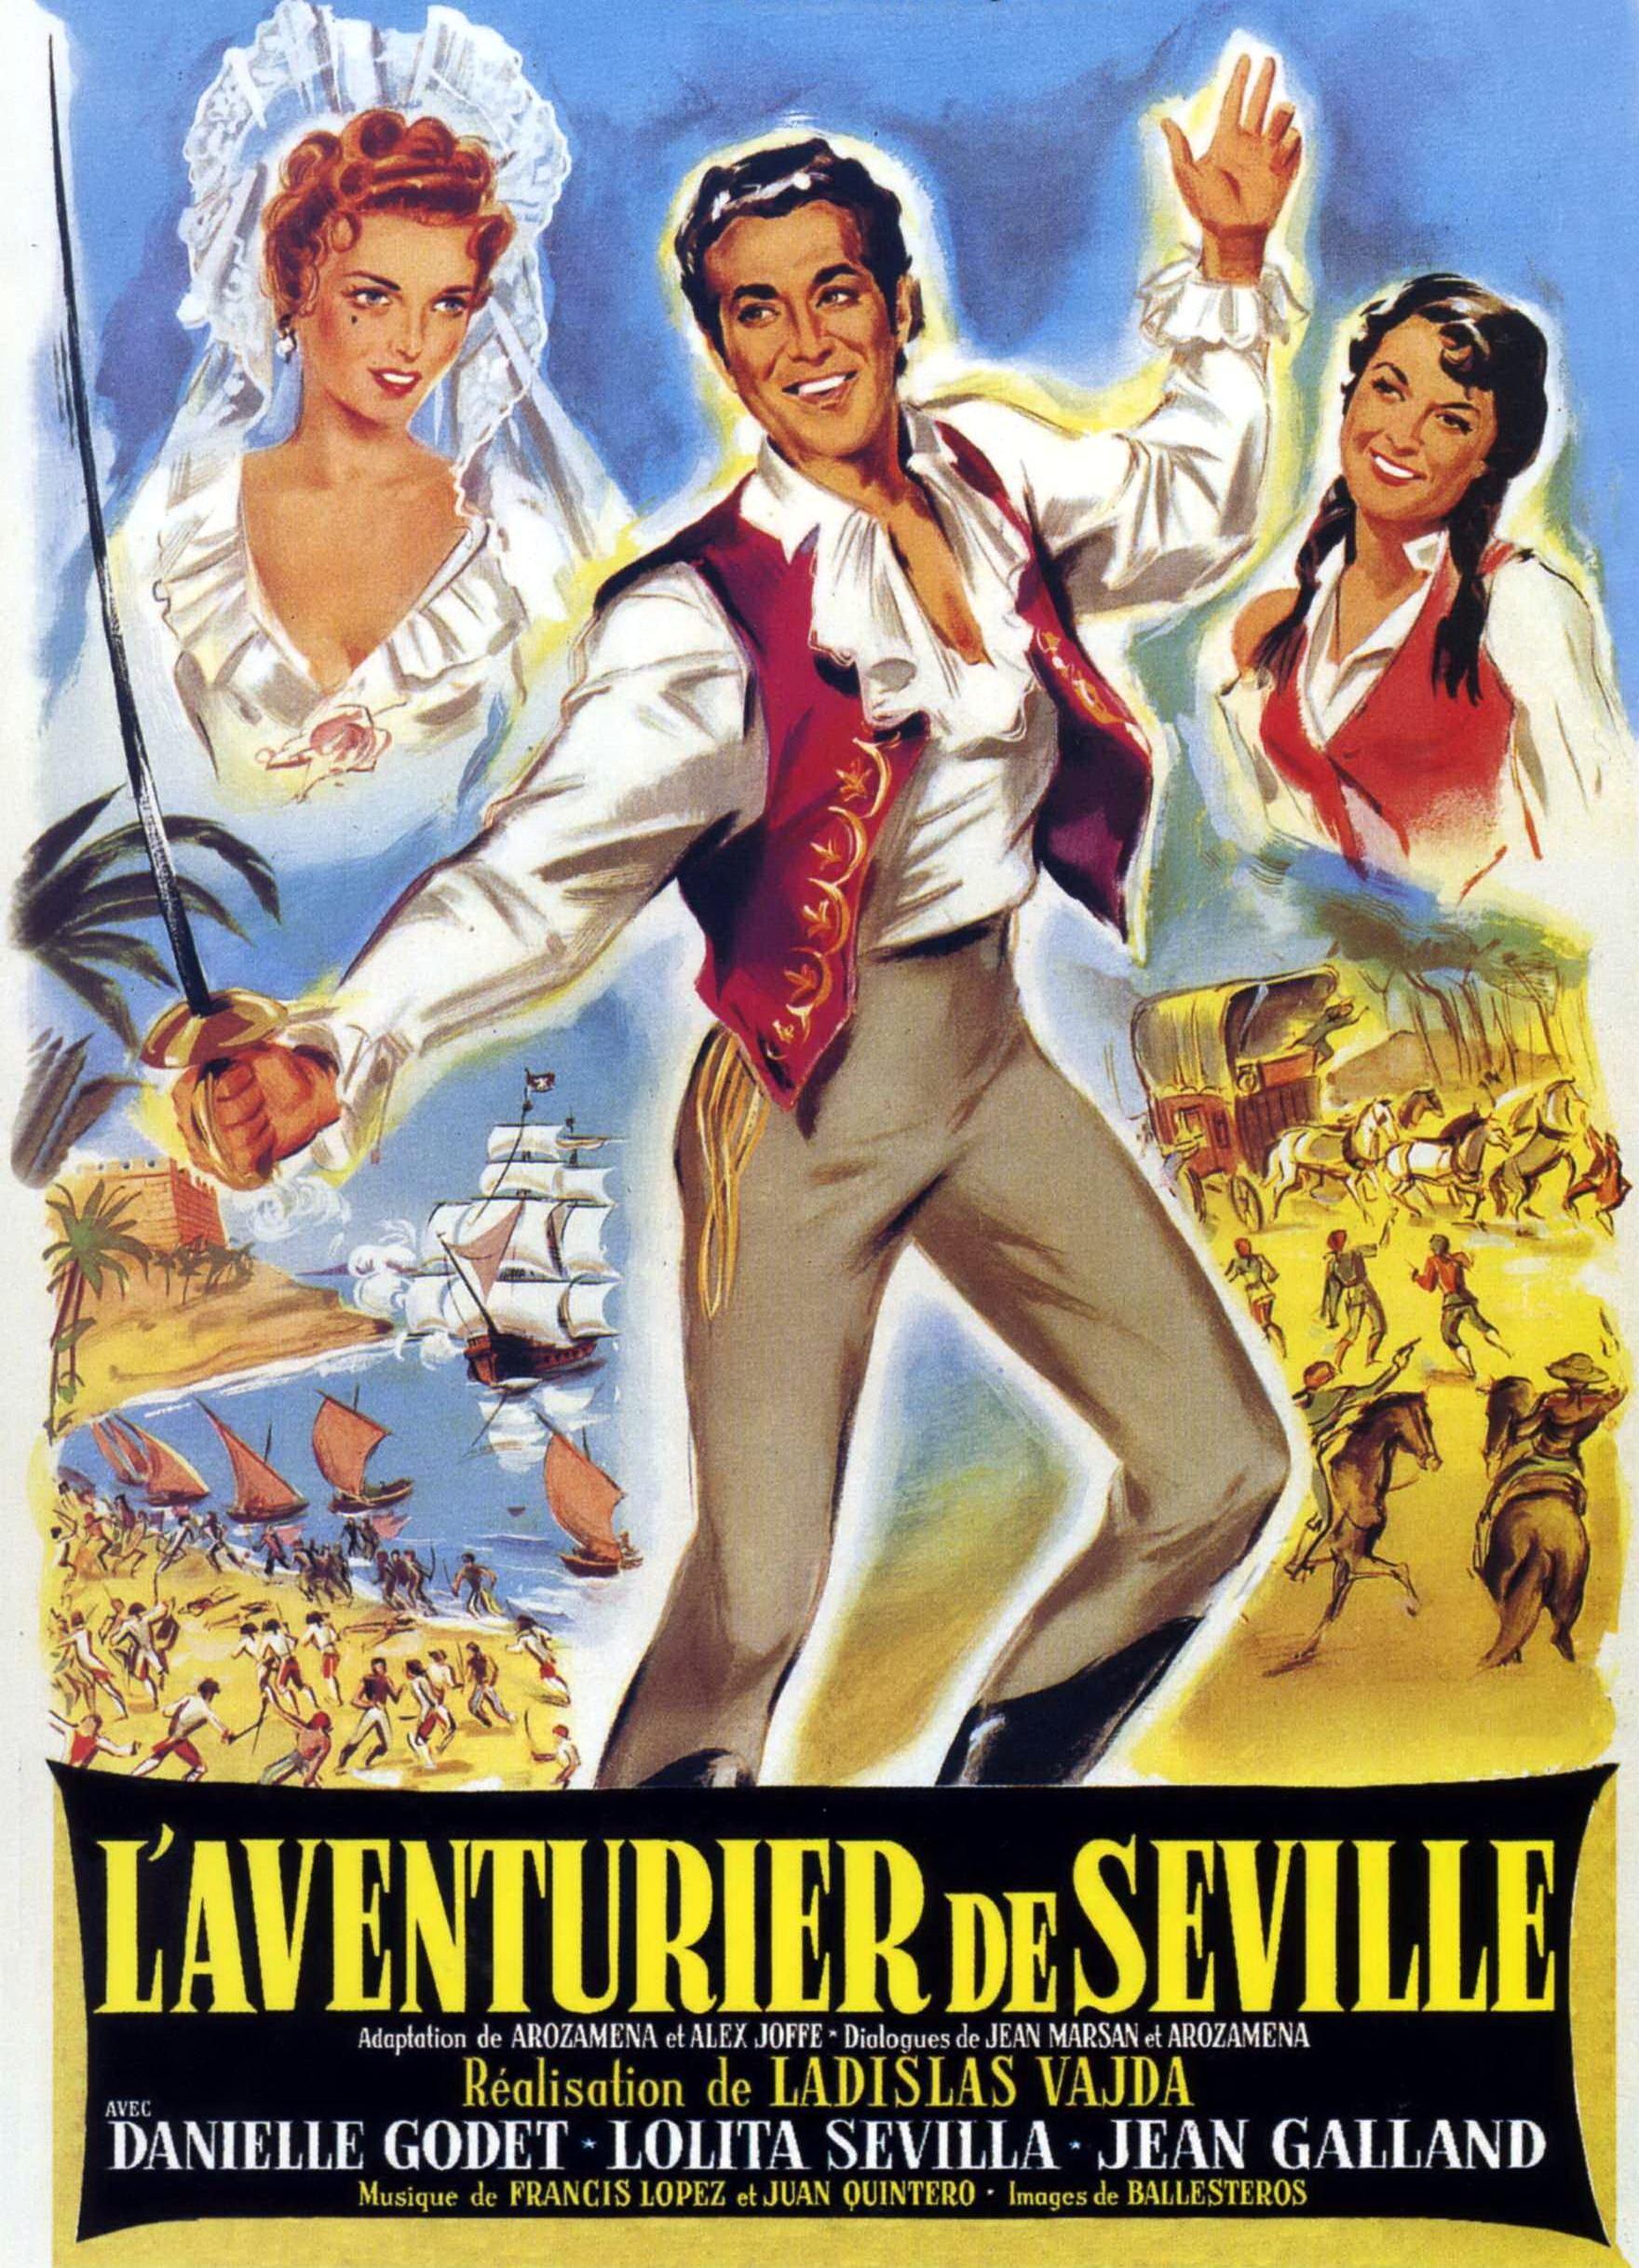 Постер фильма Aventuras del barbero de Sevilla